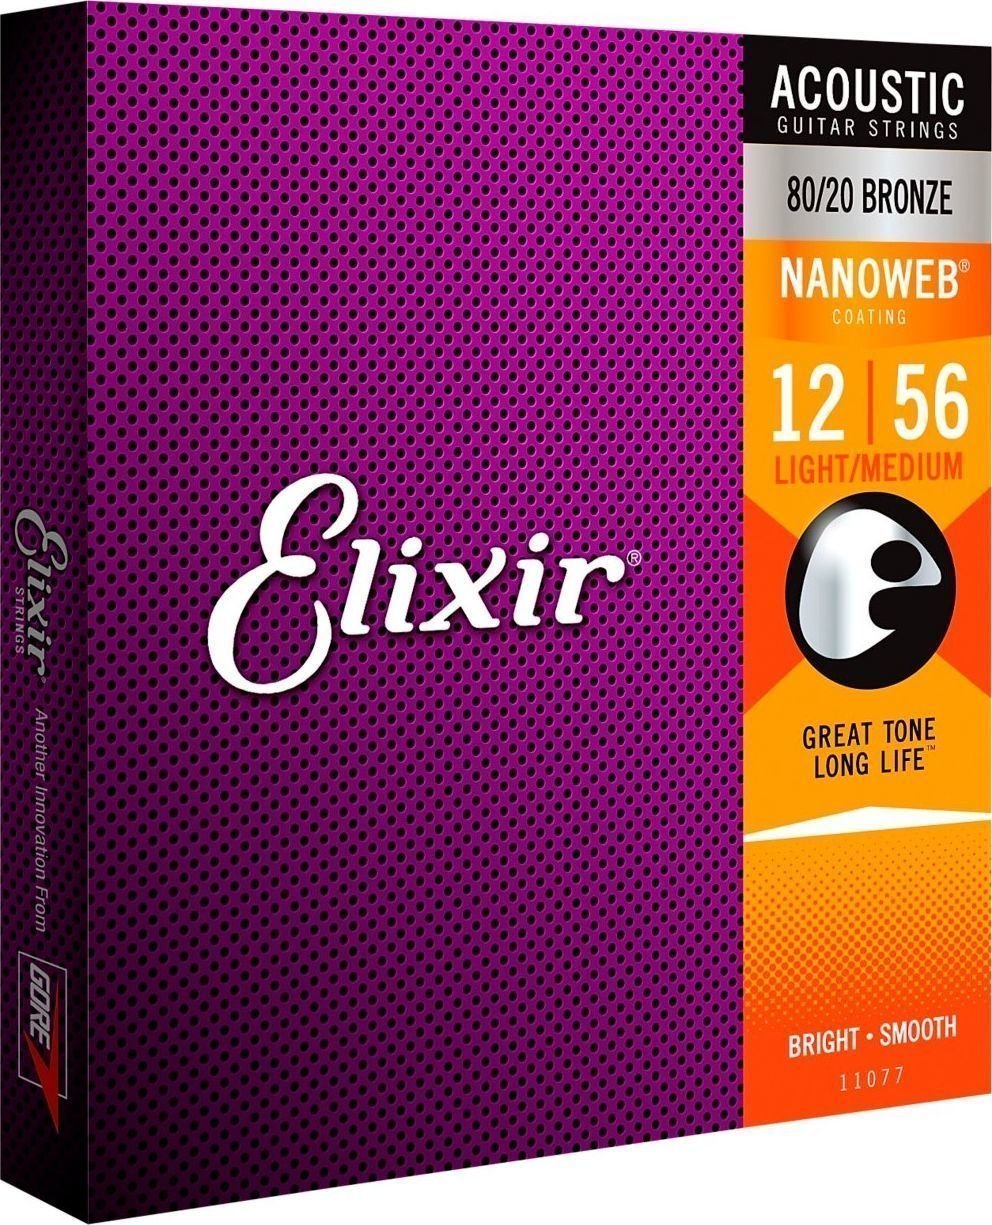 Elixir 11077 Nanoweb 12-56 Elixir